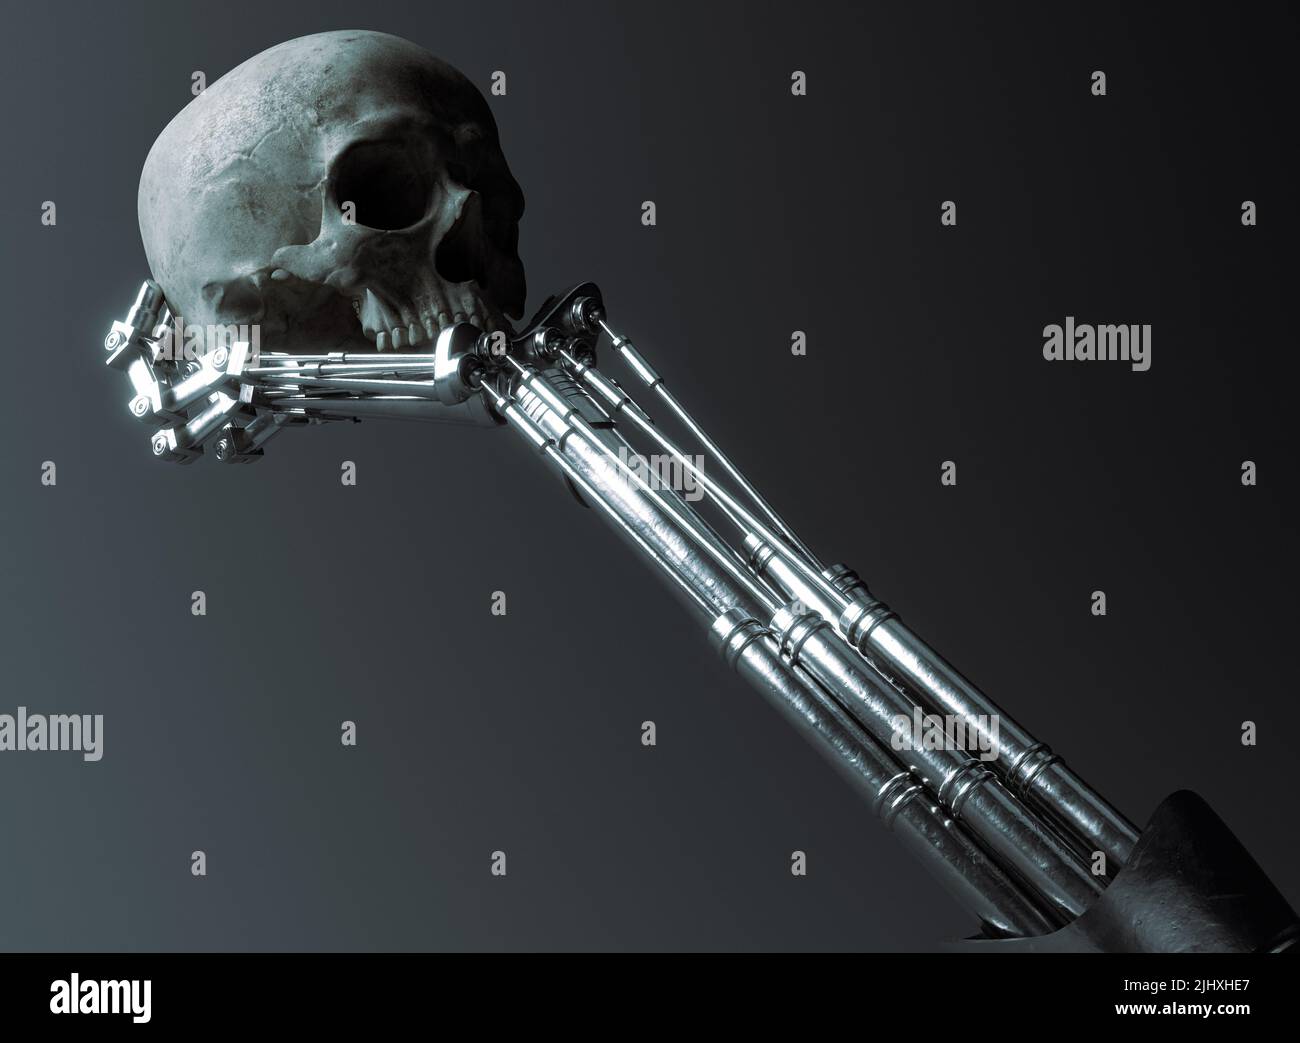 Un concetto futuristico di una mano meccanica robotica in metallo che tiene in mano e analizza un cranio umano su uno sfondo oscuro e ominoso - 3D rendering Foto Stock